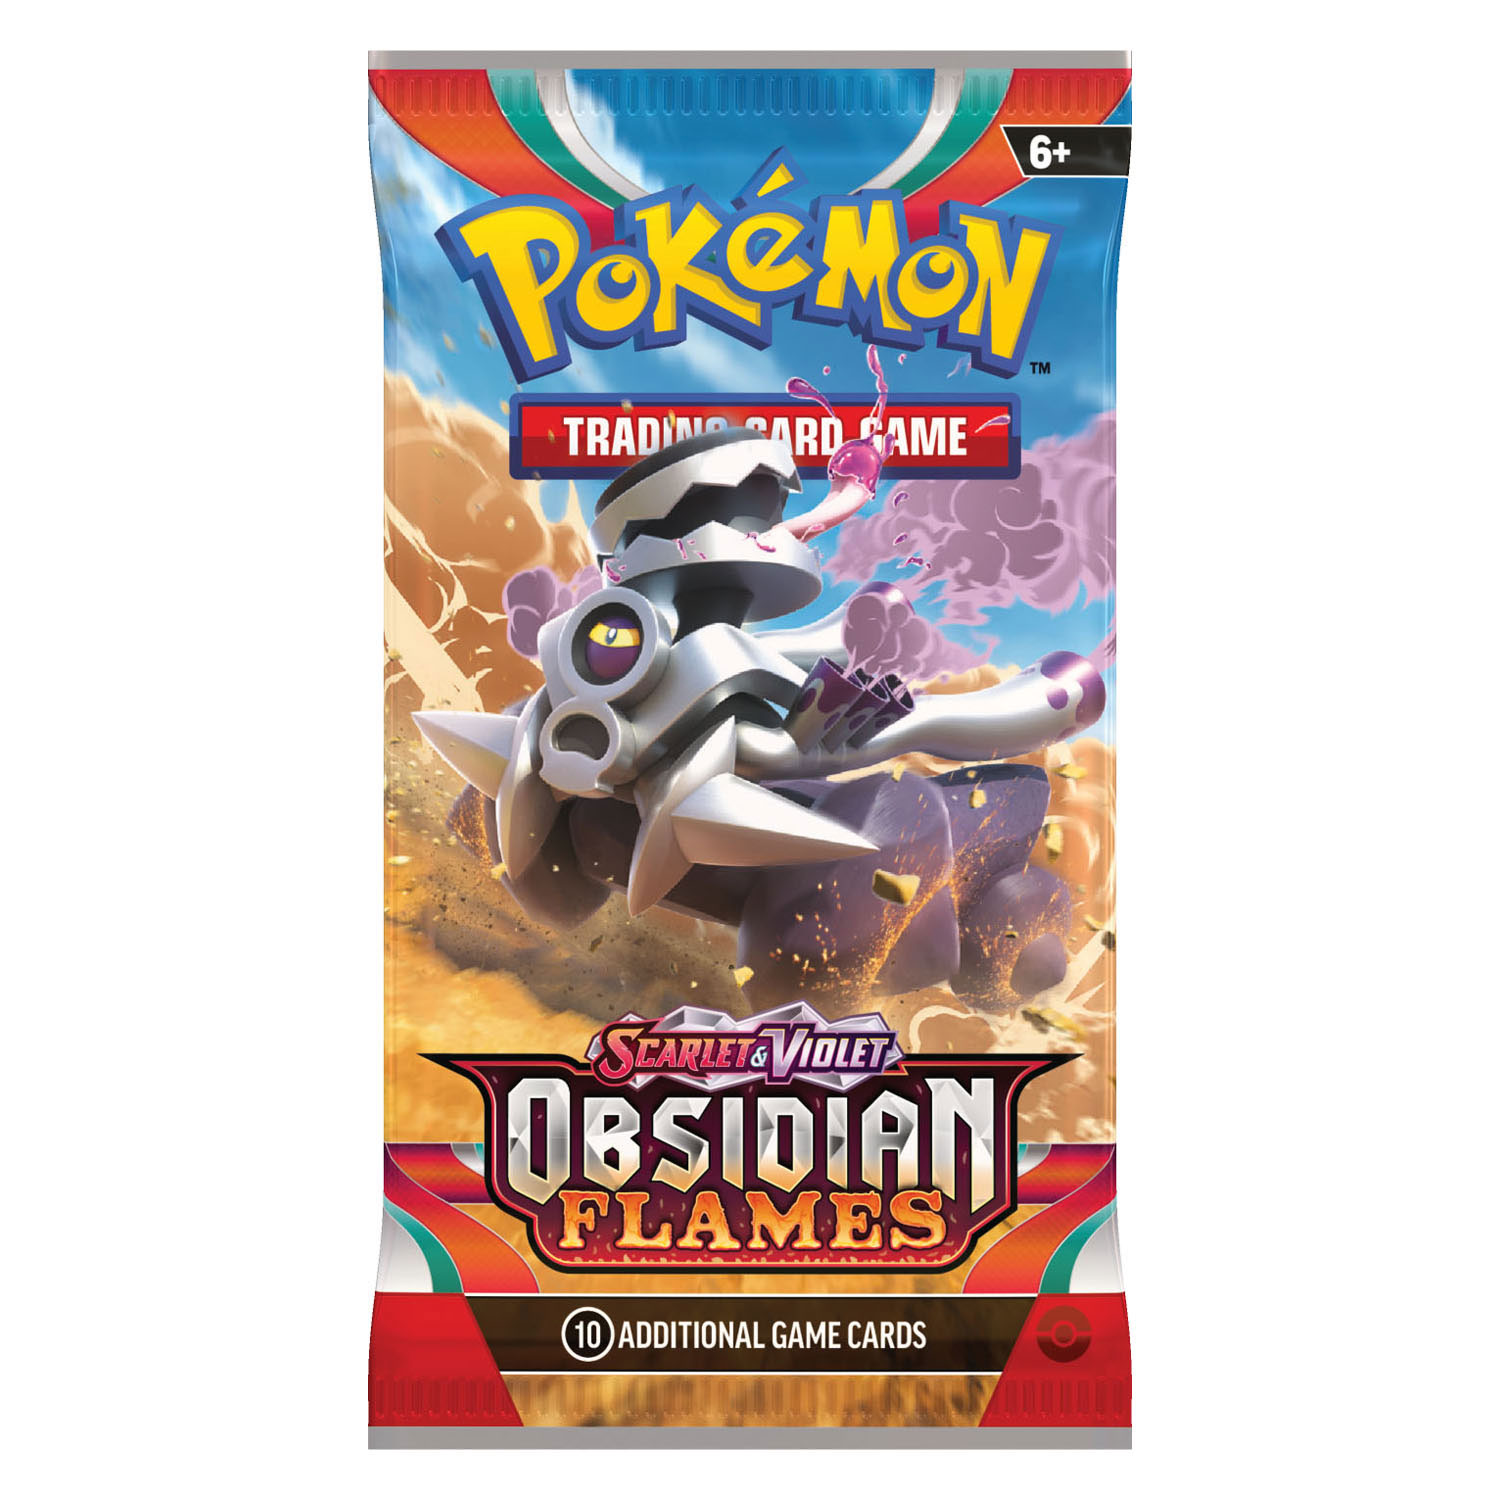 Pokemon TCG Scarlet & Violet Obsidian Flames Booster Pack